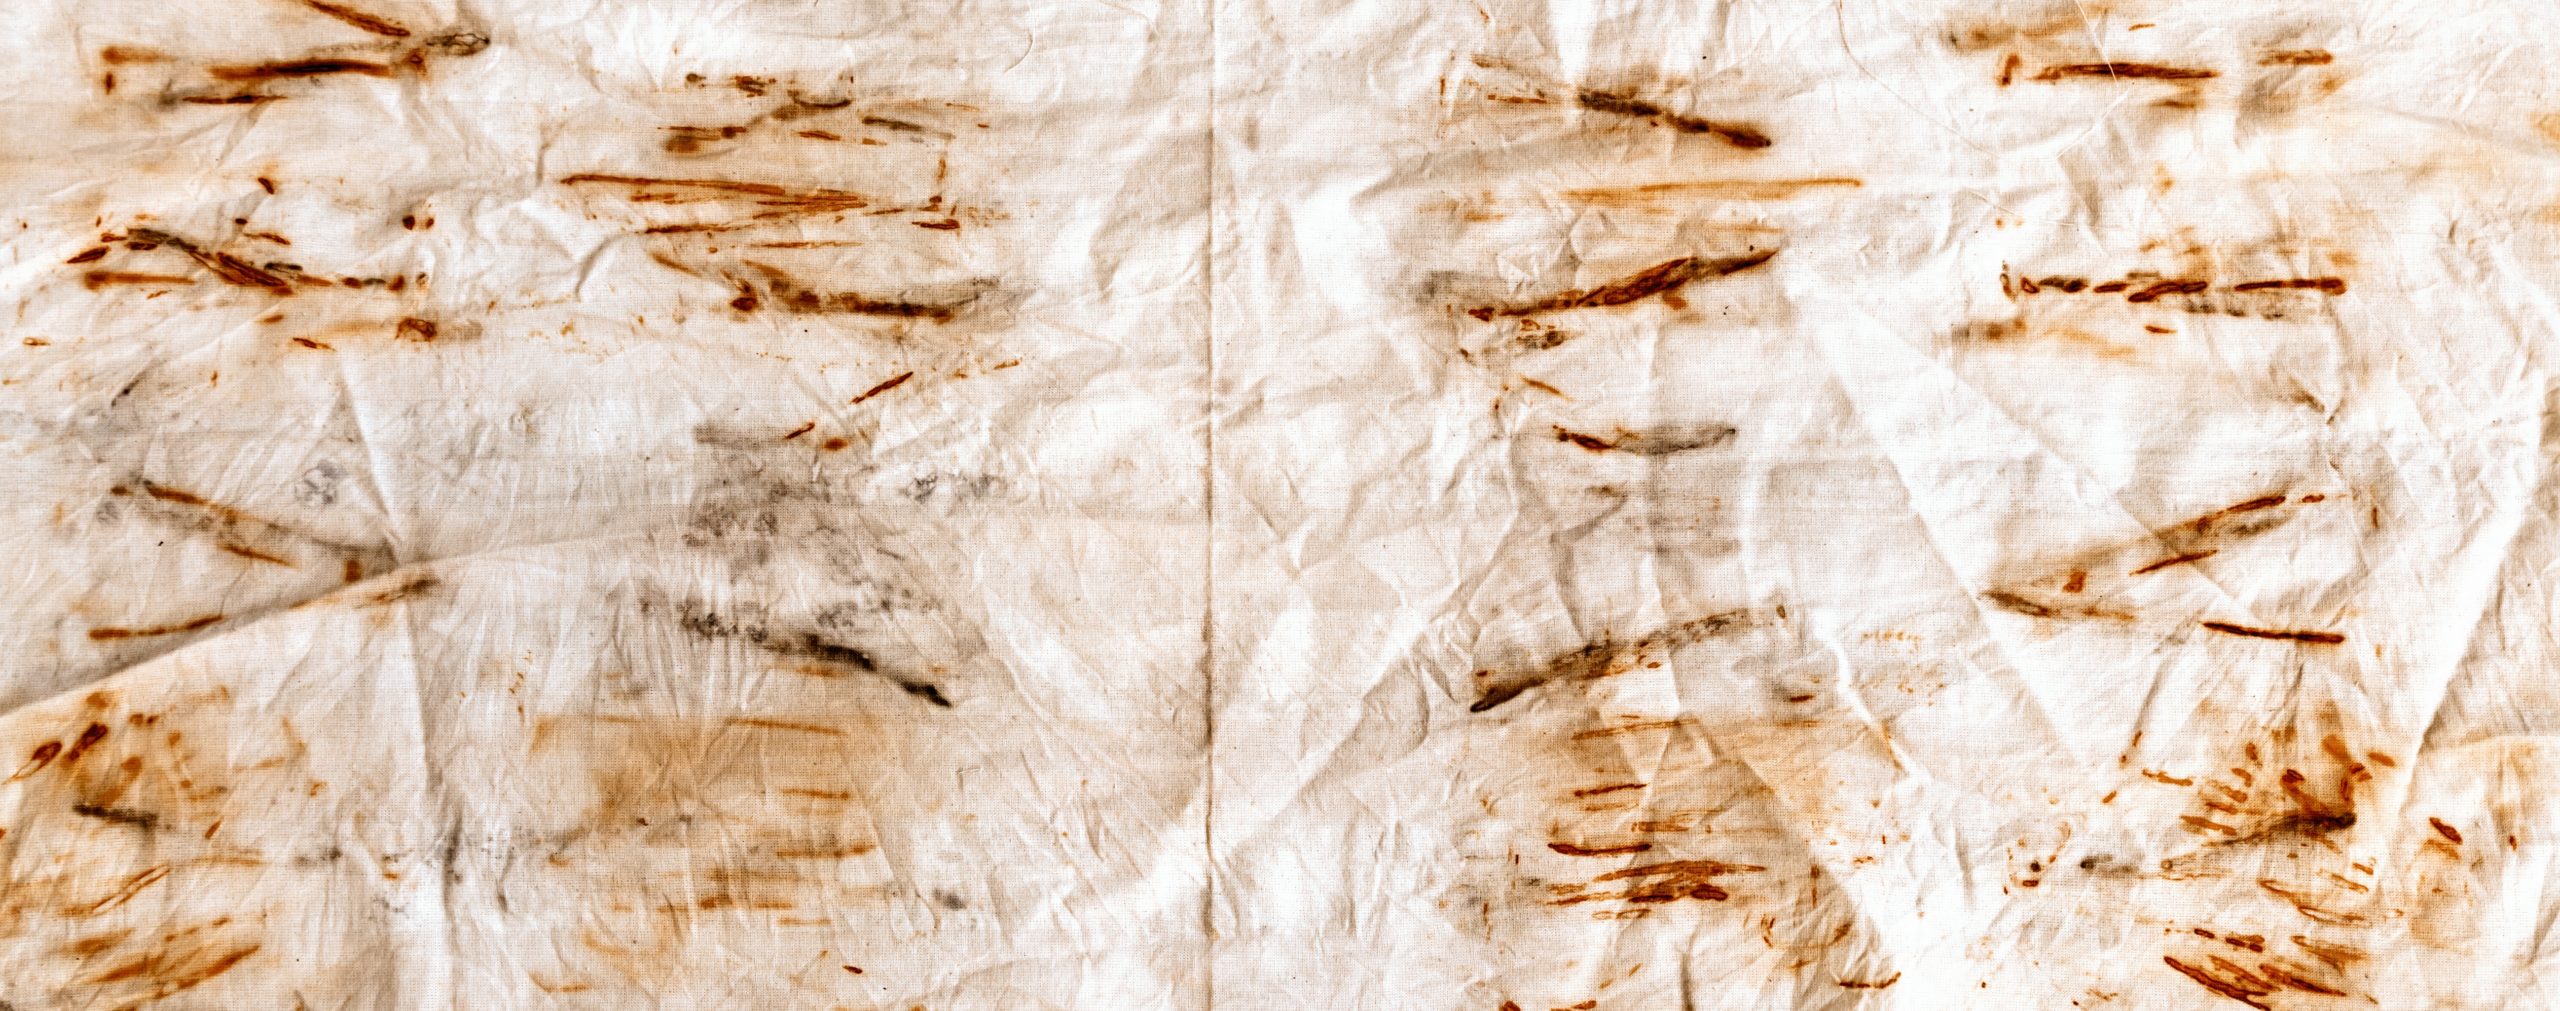 Segredo revelado: aprenda 4 truques para tirar ferrugem das roupas branca Imagem por Shutterstock